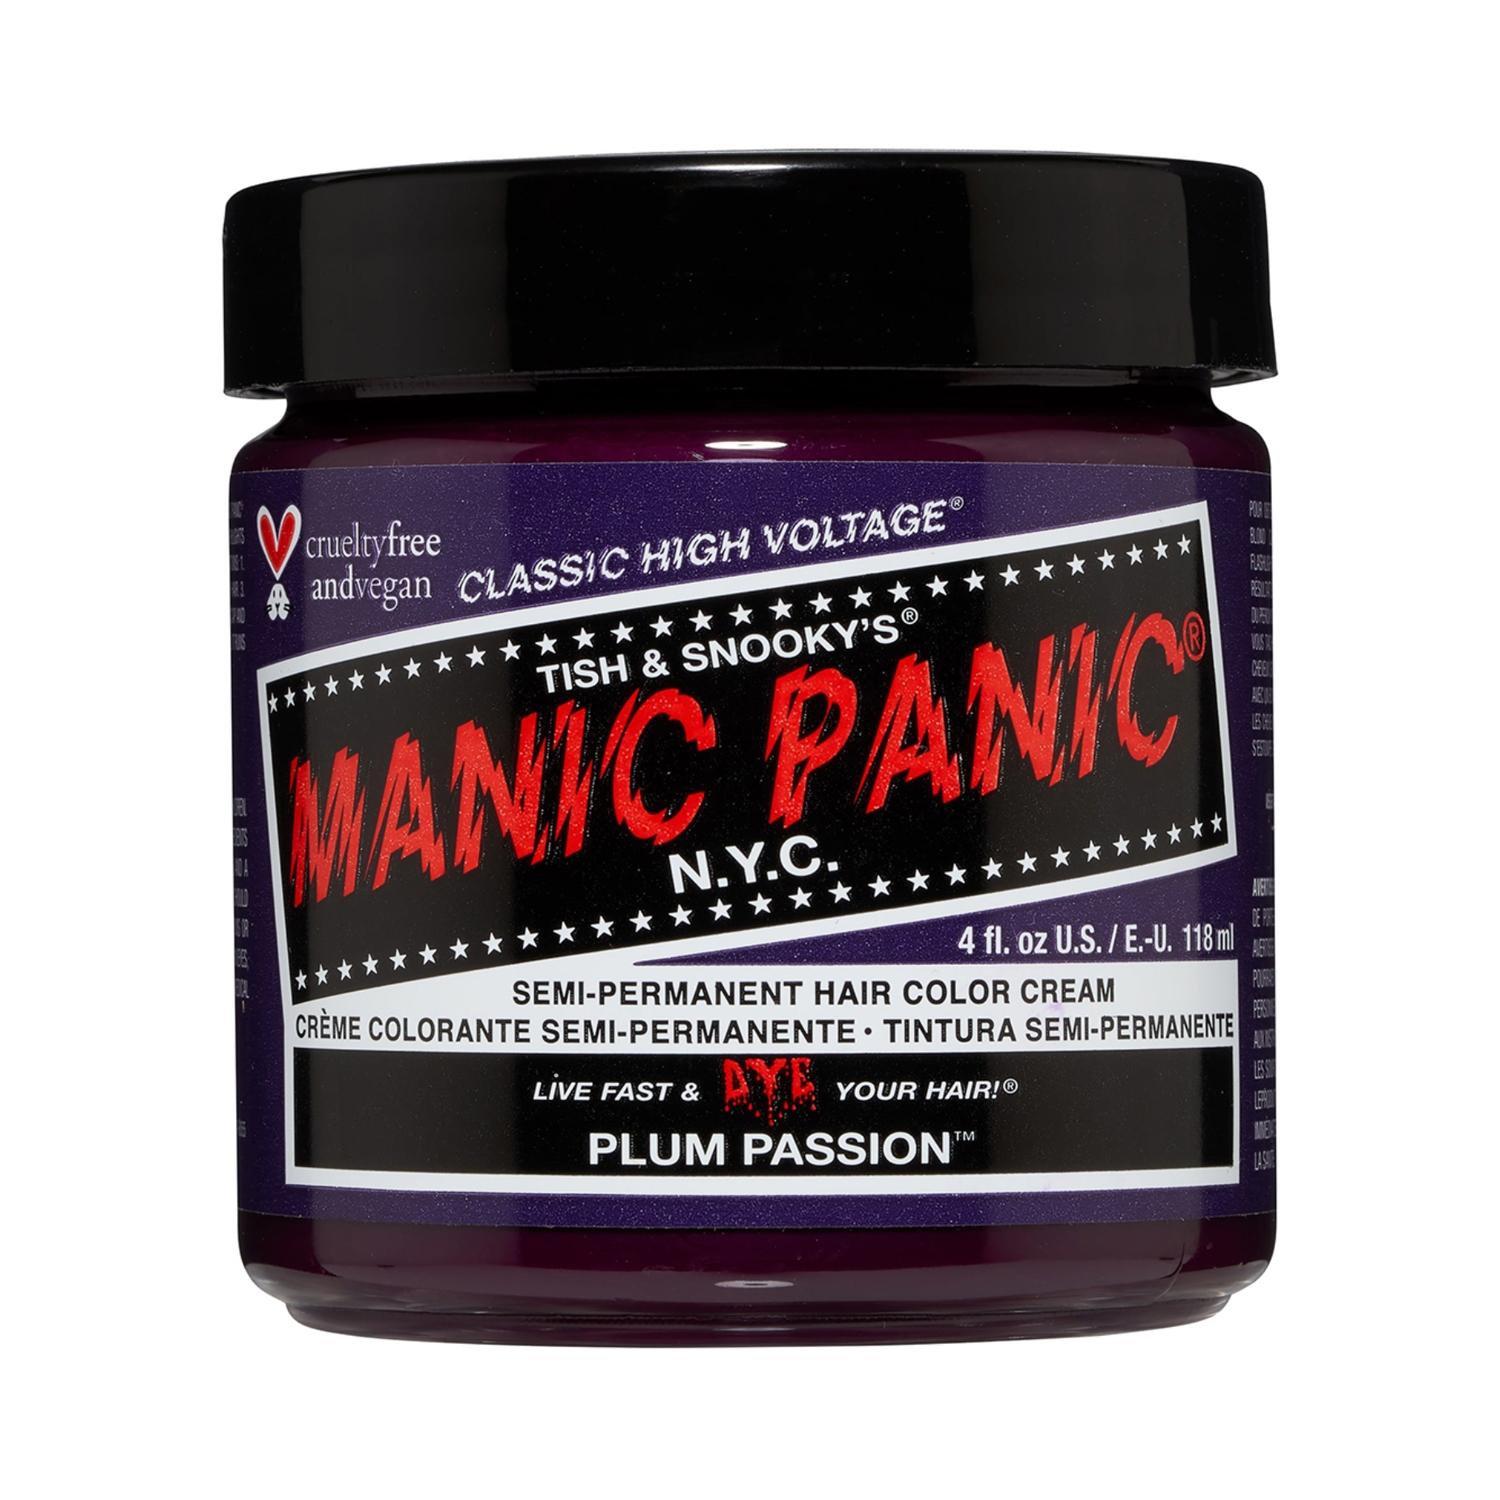 manic panic classic high voltage semi permanent hair color cream - plum passion (118ml)